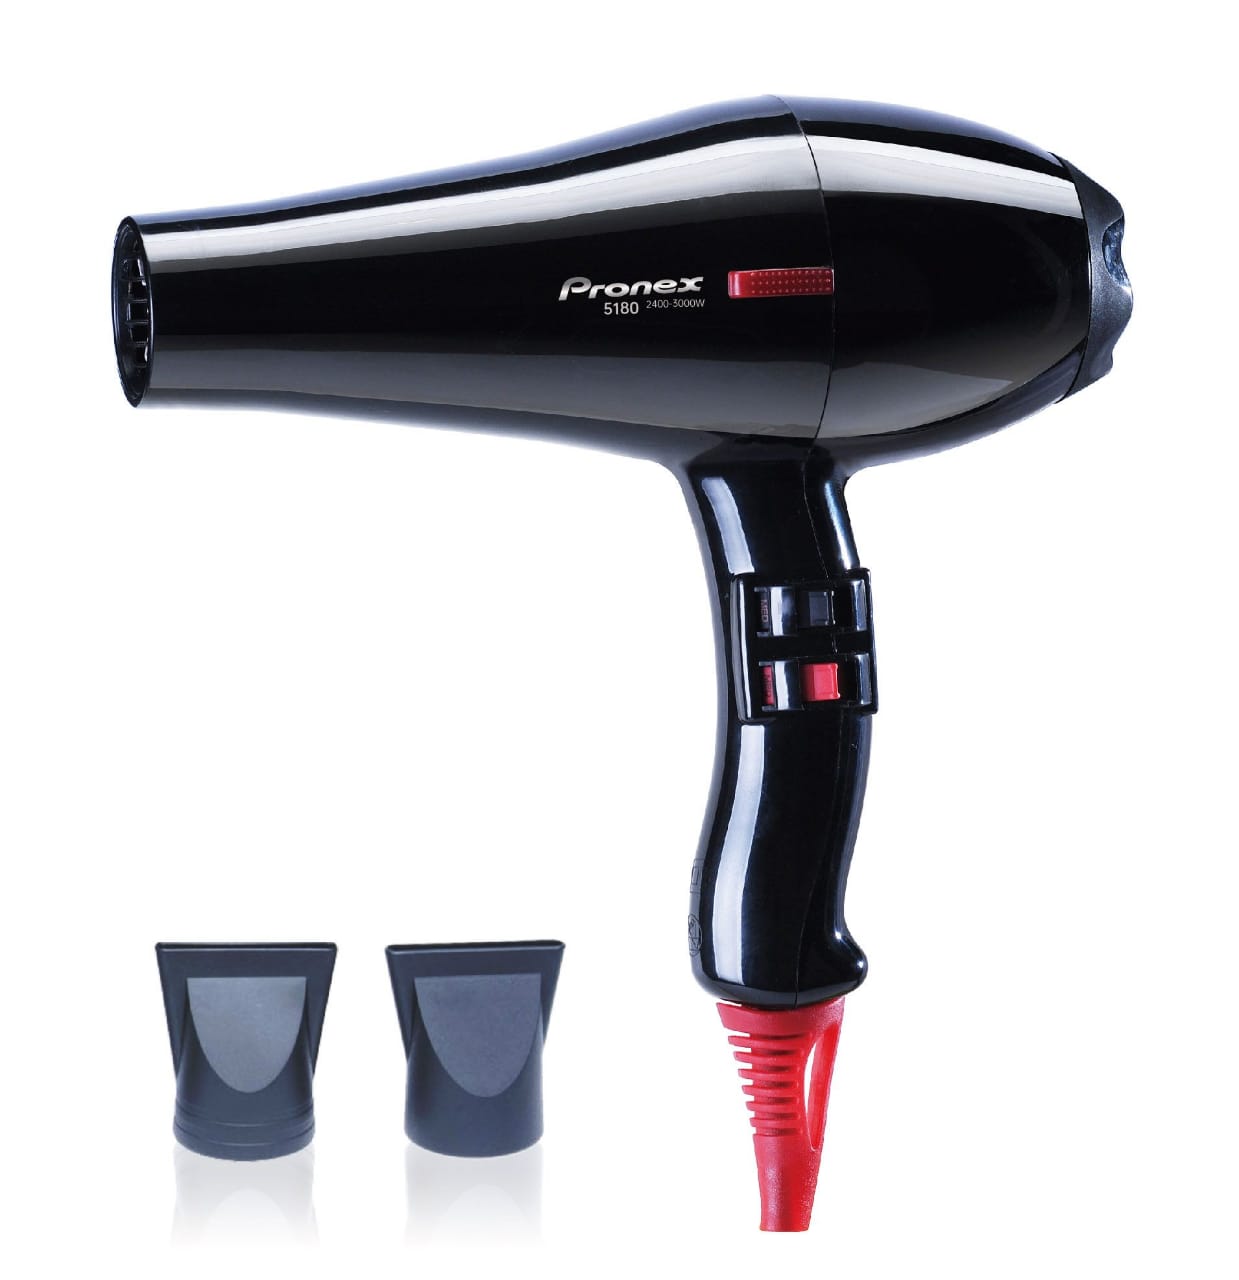 Pronex Hairdryer 2200-2400W, PN5180